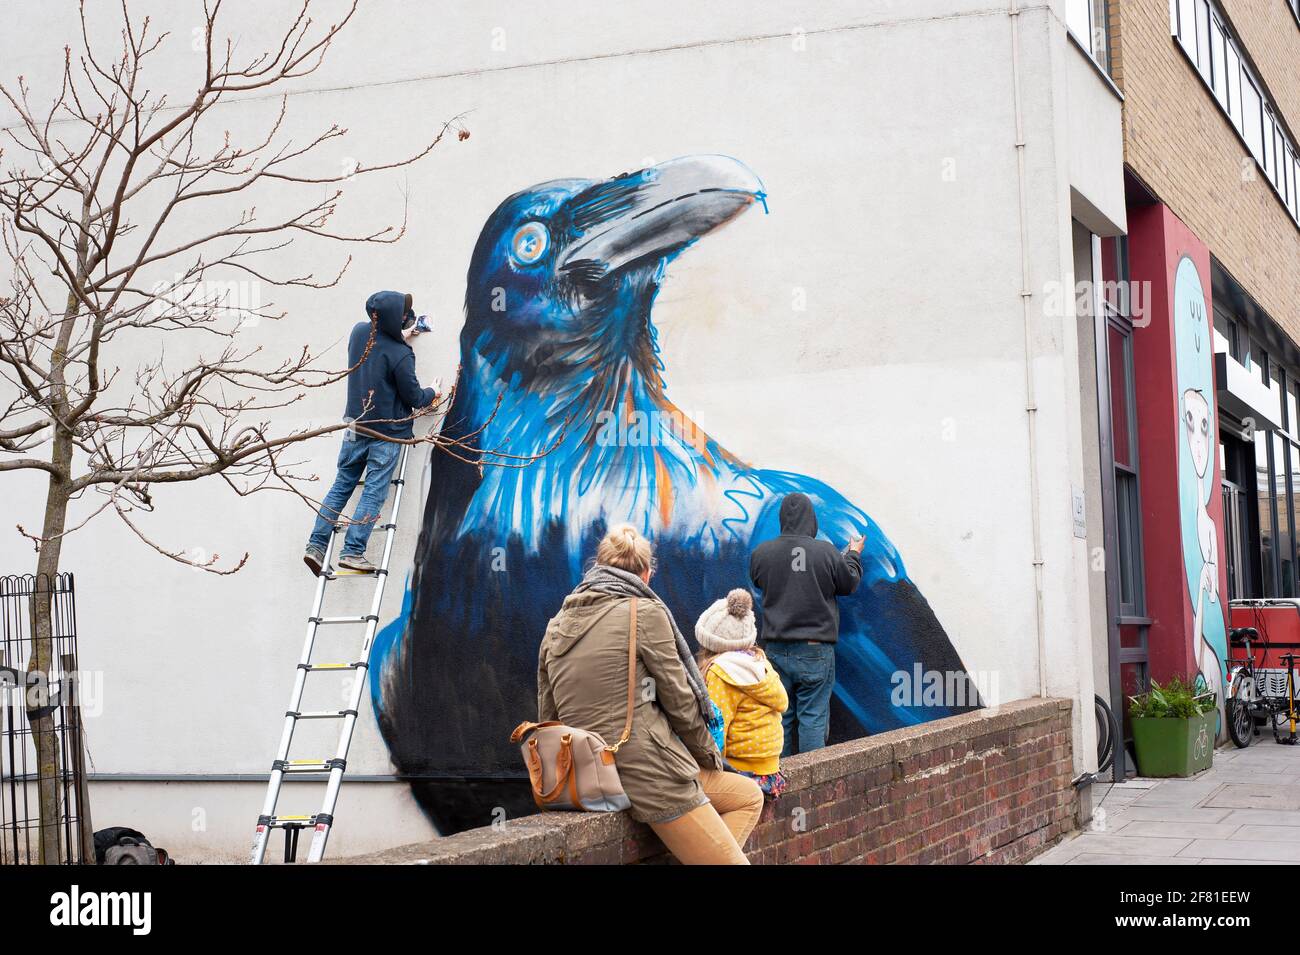 Artistas callejeros: BOE + ironía en acción. Mural de Crow en la fabricación en Whiston Road, E2 East London, Reino Unido. Abr 2013 Foto de stock